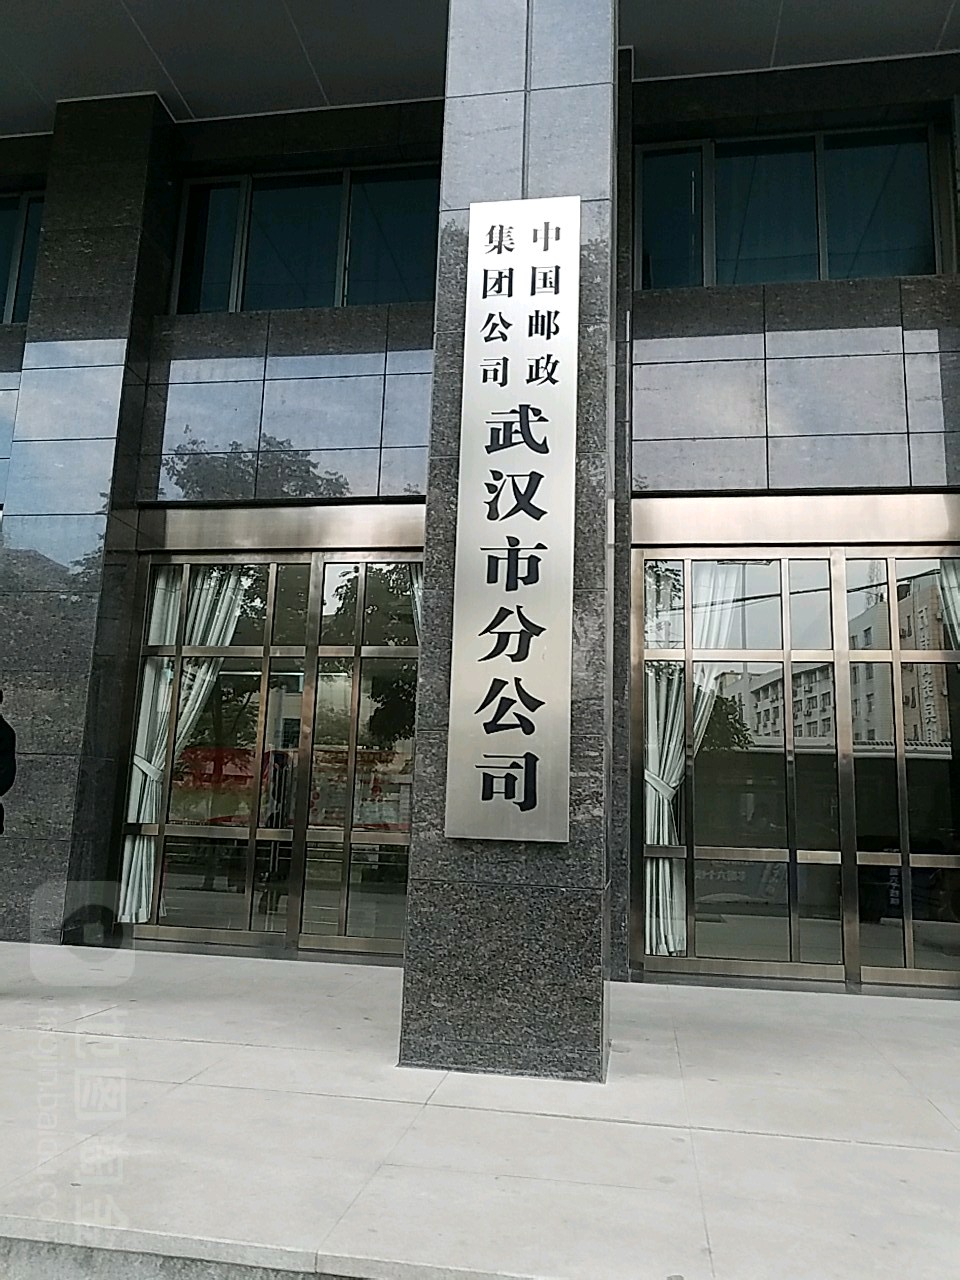 中国邮政集团公司(武汉市分公司)